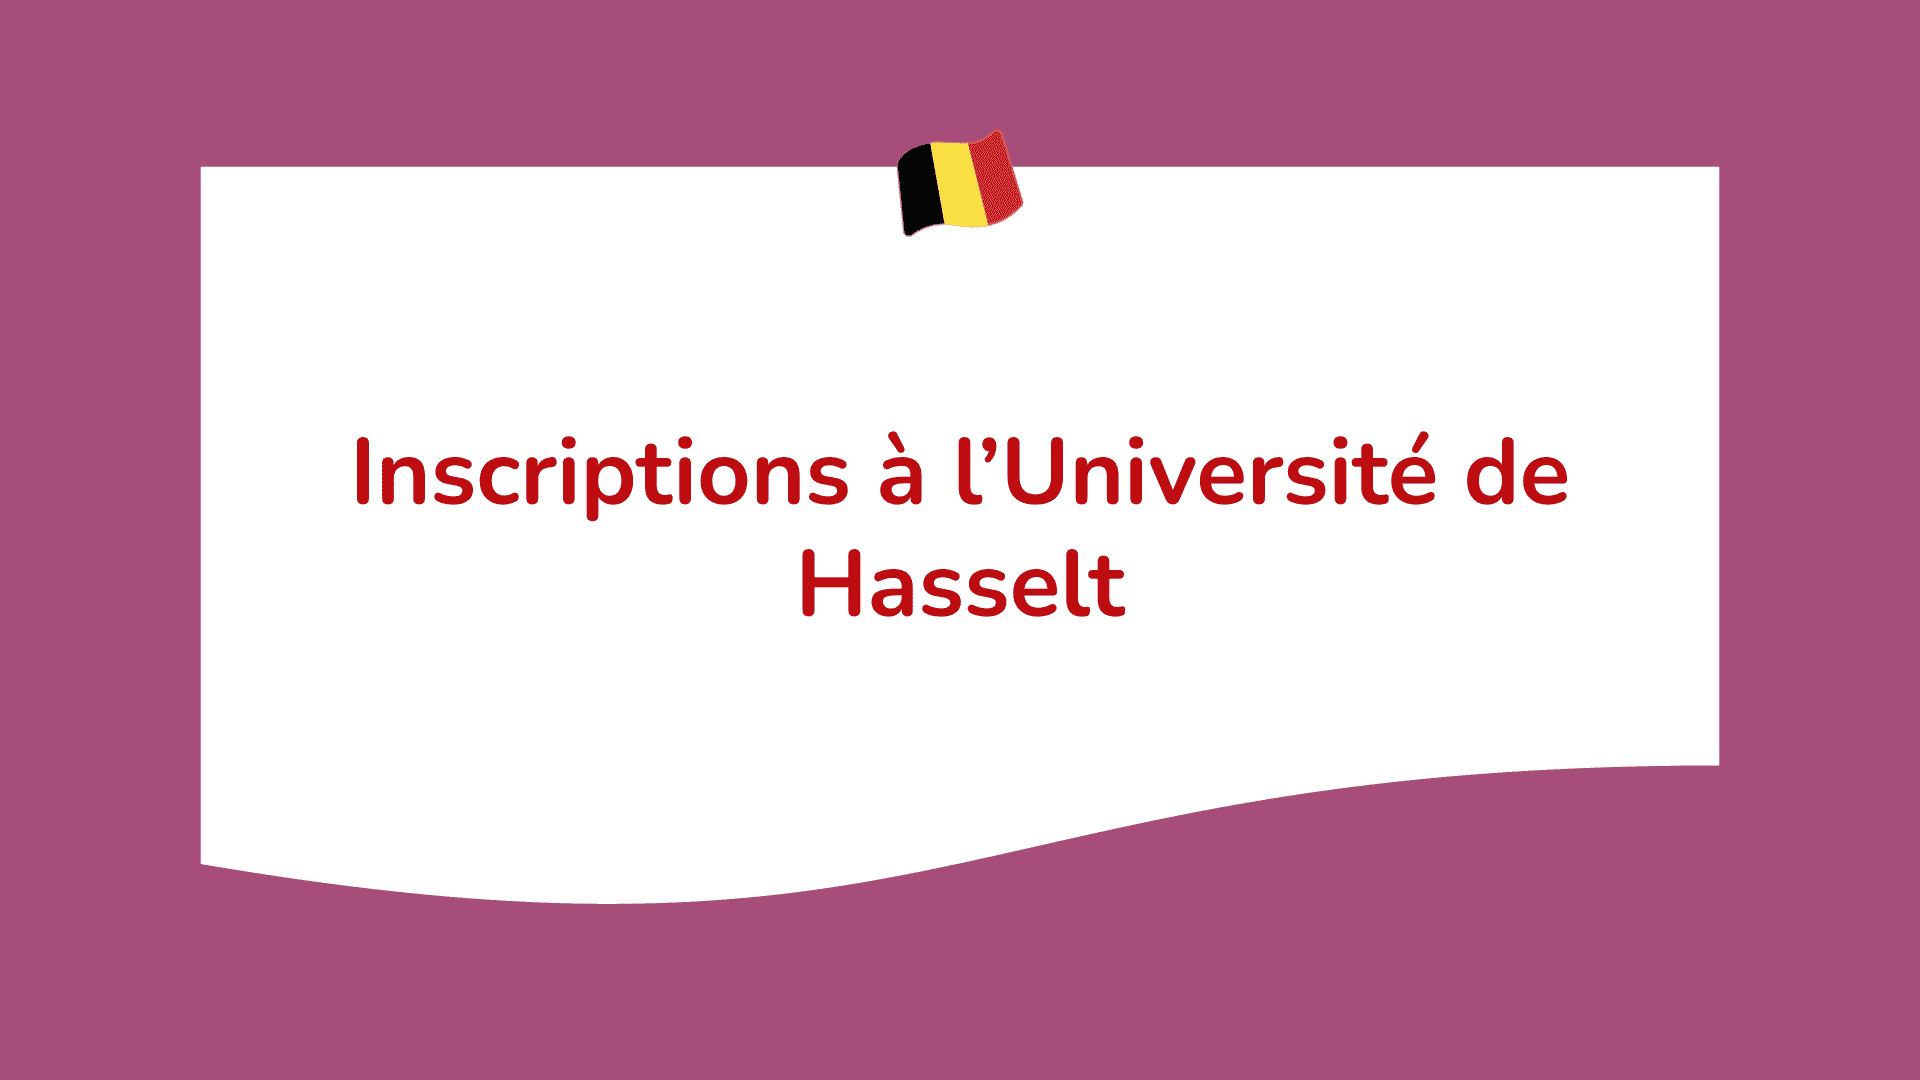 Inscriptions à l’Université de Hasselt